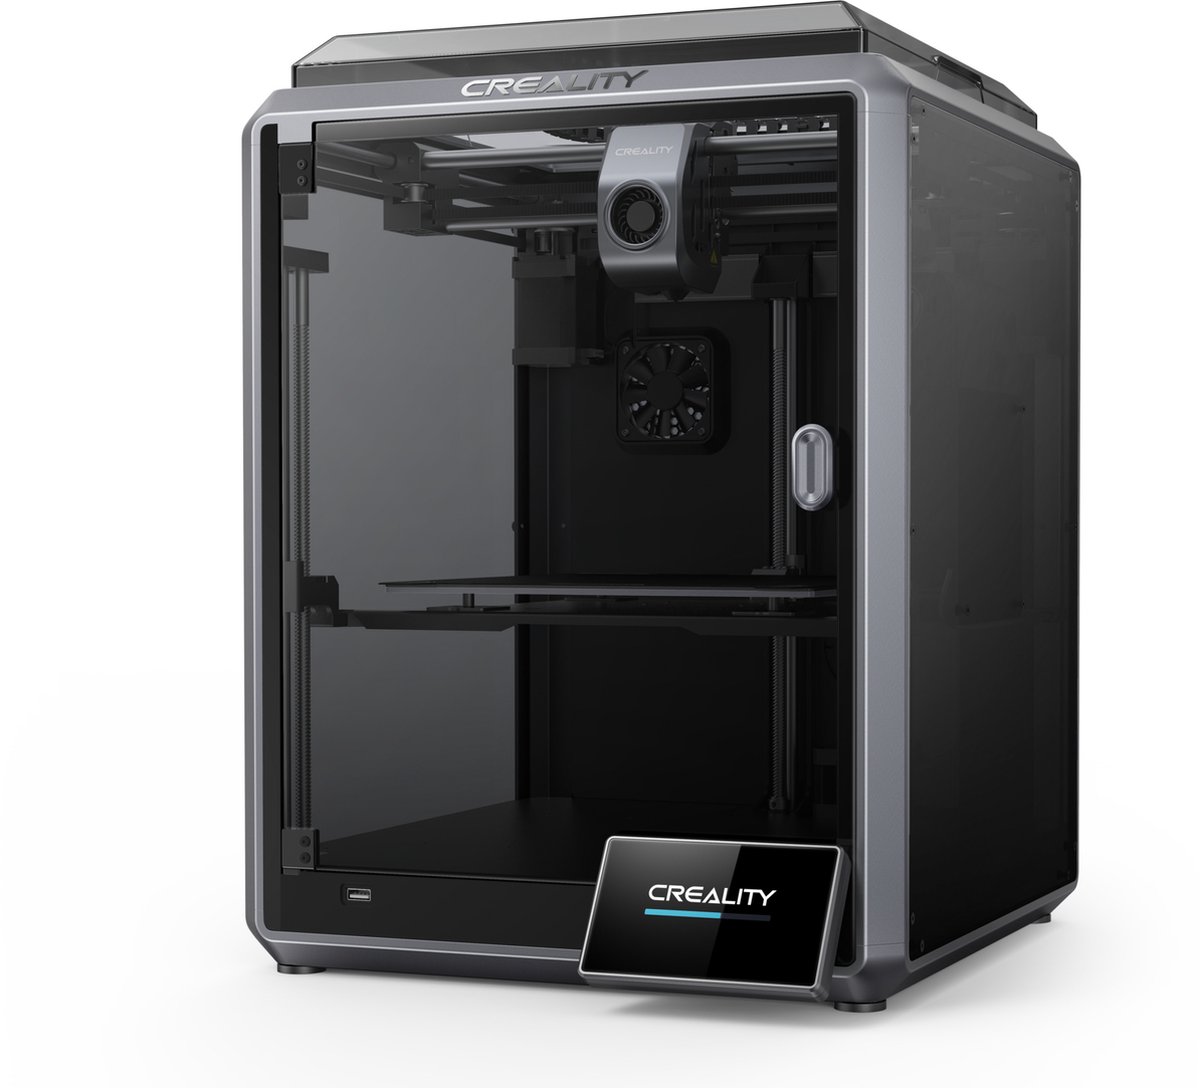 Creality Ender K1 - 3D printer - New Fast Printing Tech - 220x220x250Mm